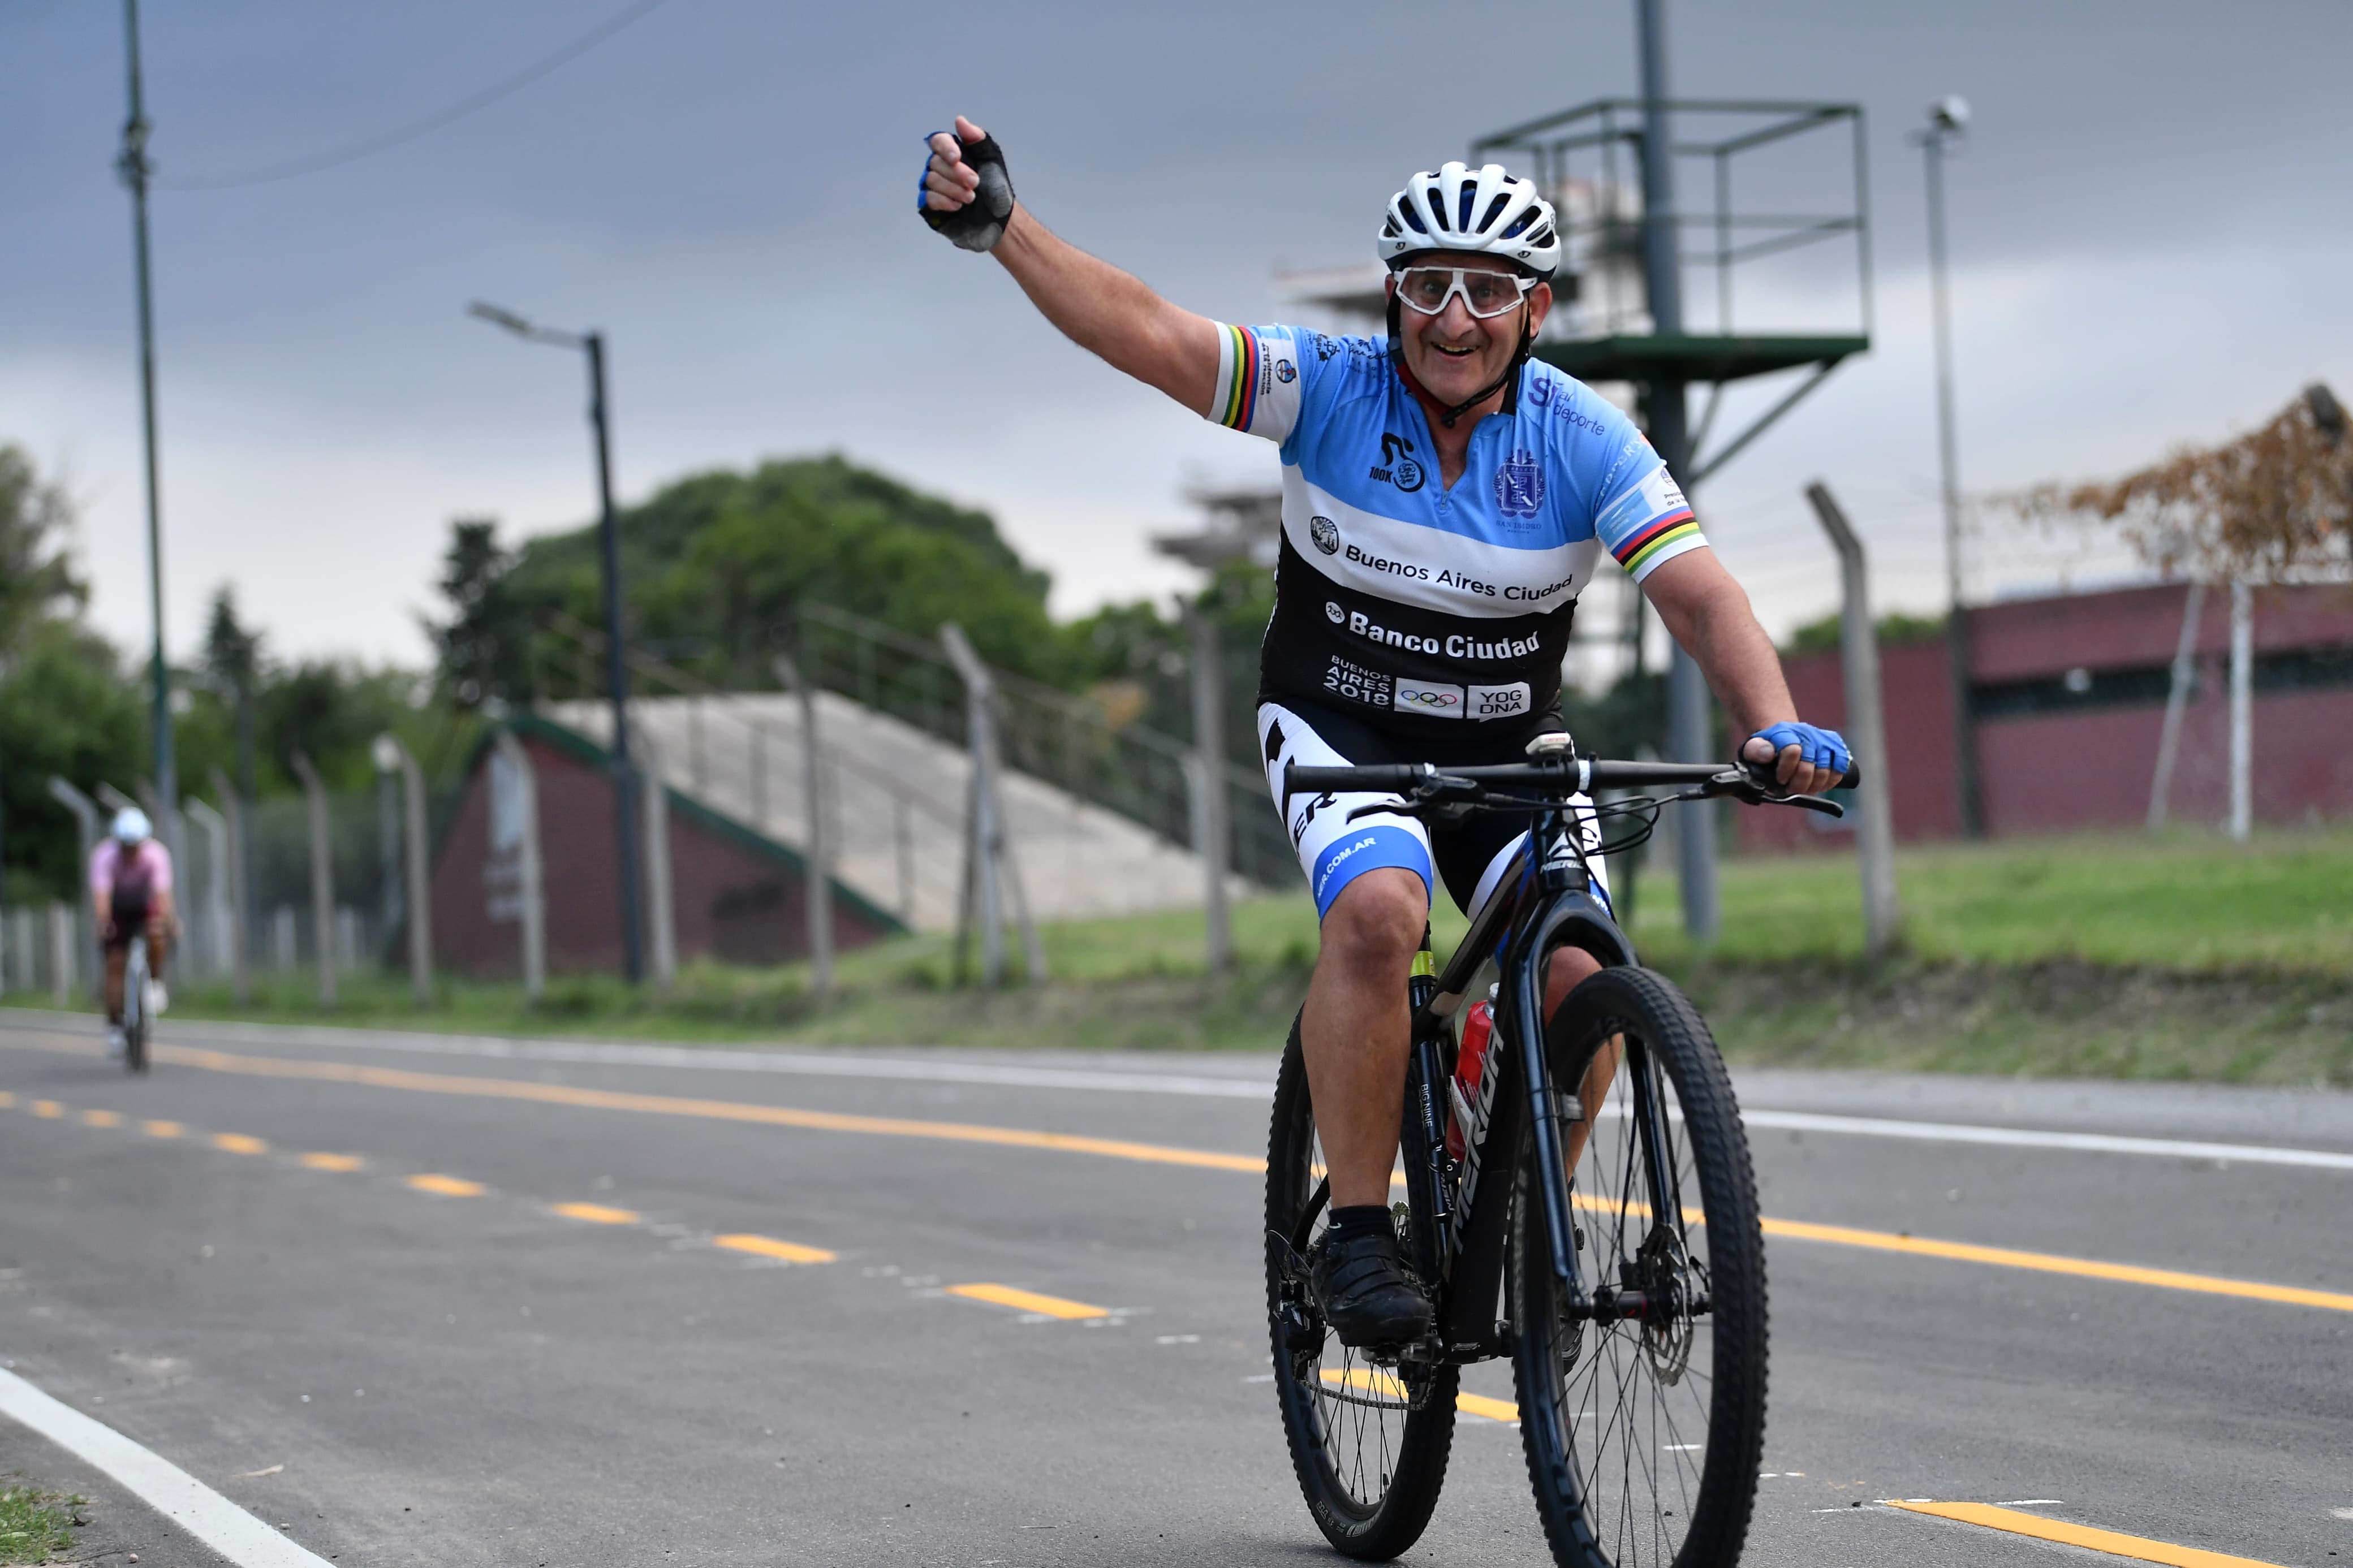 Ya funciona la nueva pista de ciclismo del Parque Sarmiento 